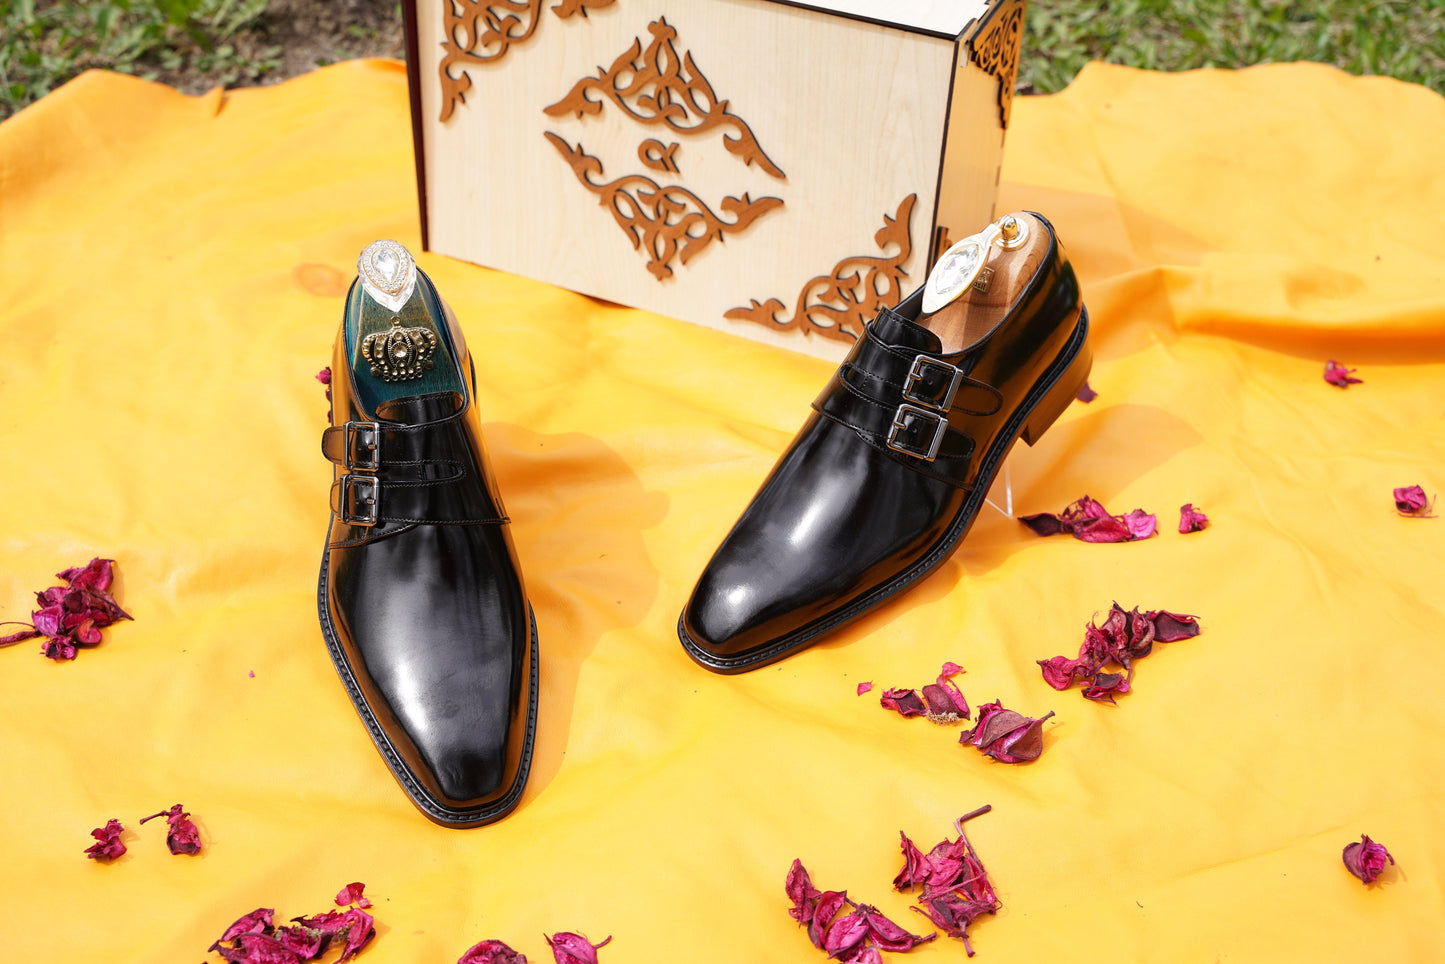 Black Monk Strap Men's Dress Shoes Premium Quality Custom Size Men Shoes Men Office Shoes, Mens Formal Shoes Luxury Men Shoes